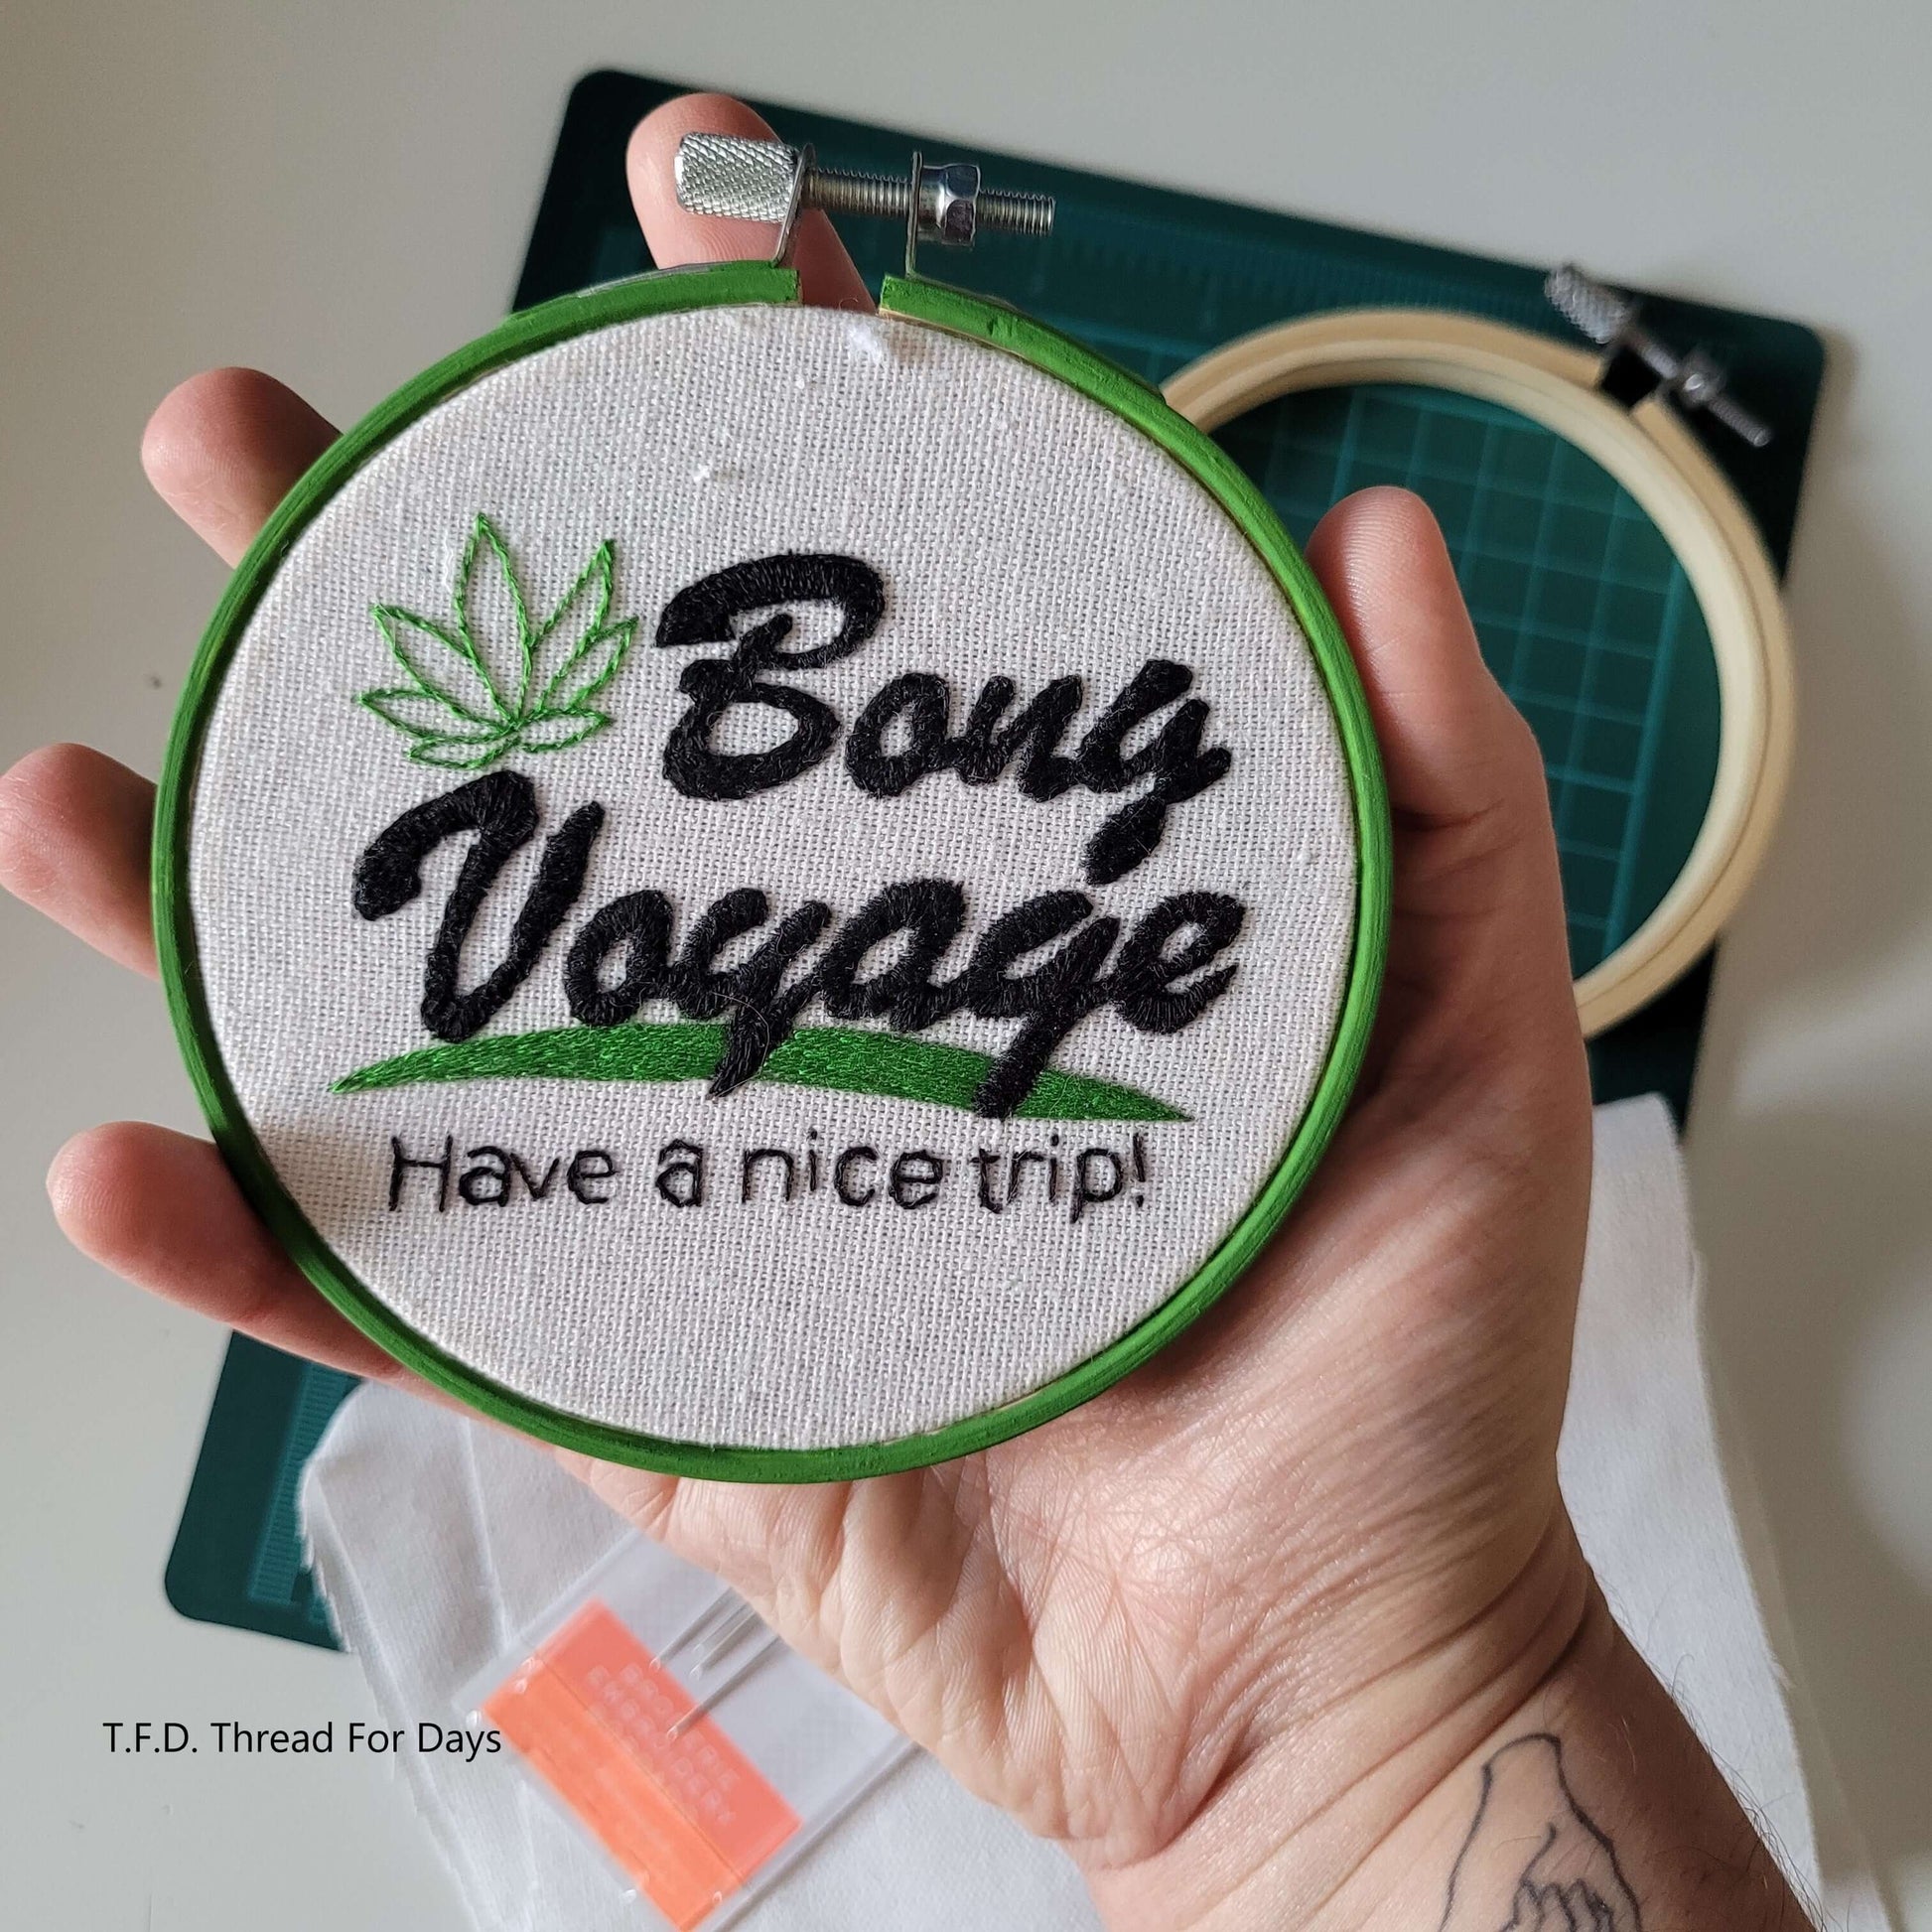 Bong voyage hoop held in hand